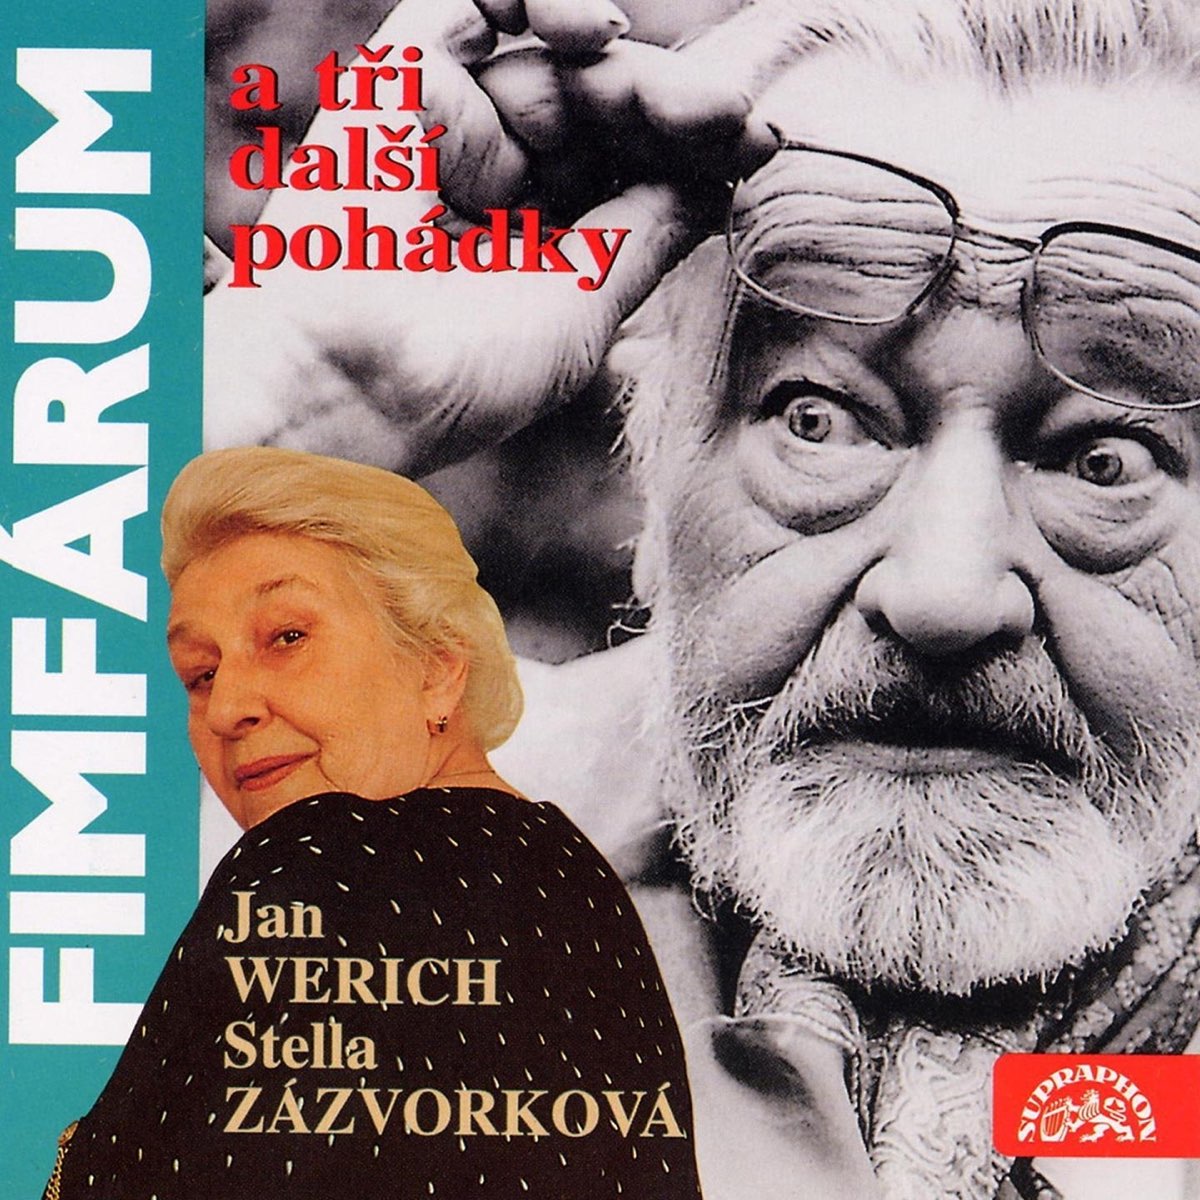 Fimfárum 1 (Fimfárum A 3 Další Pohádky) by Jan Werich & Stella Zázvorková  on iTunes